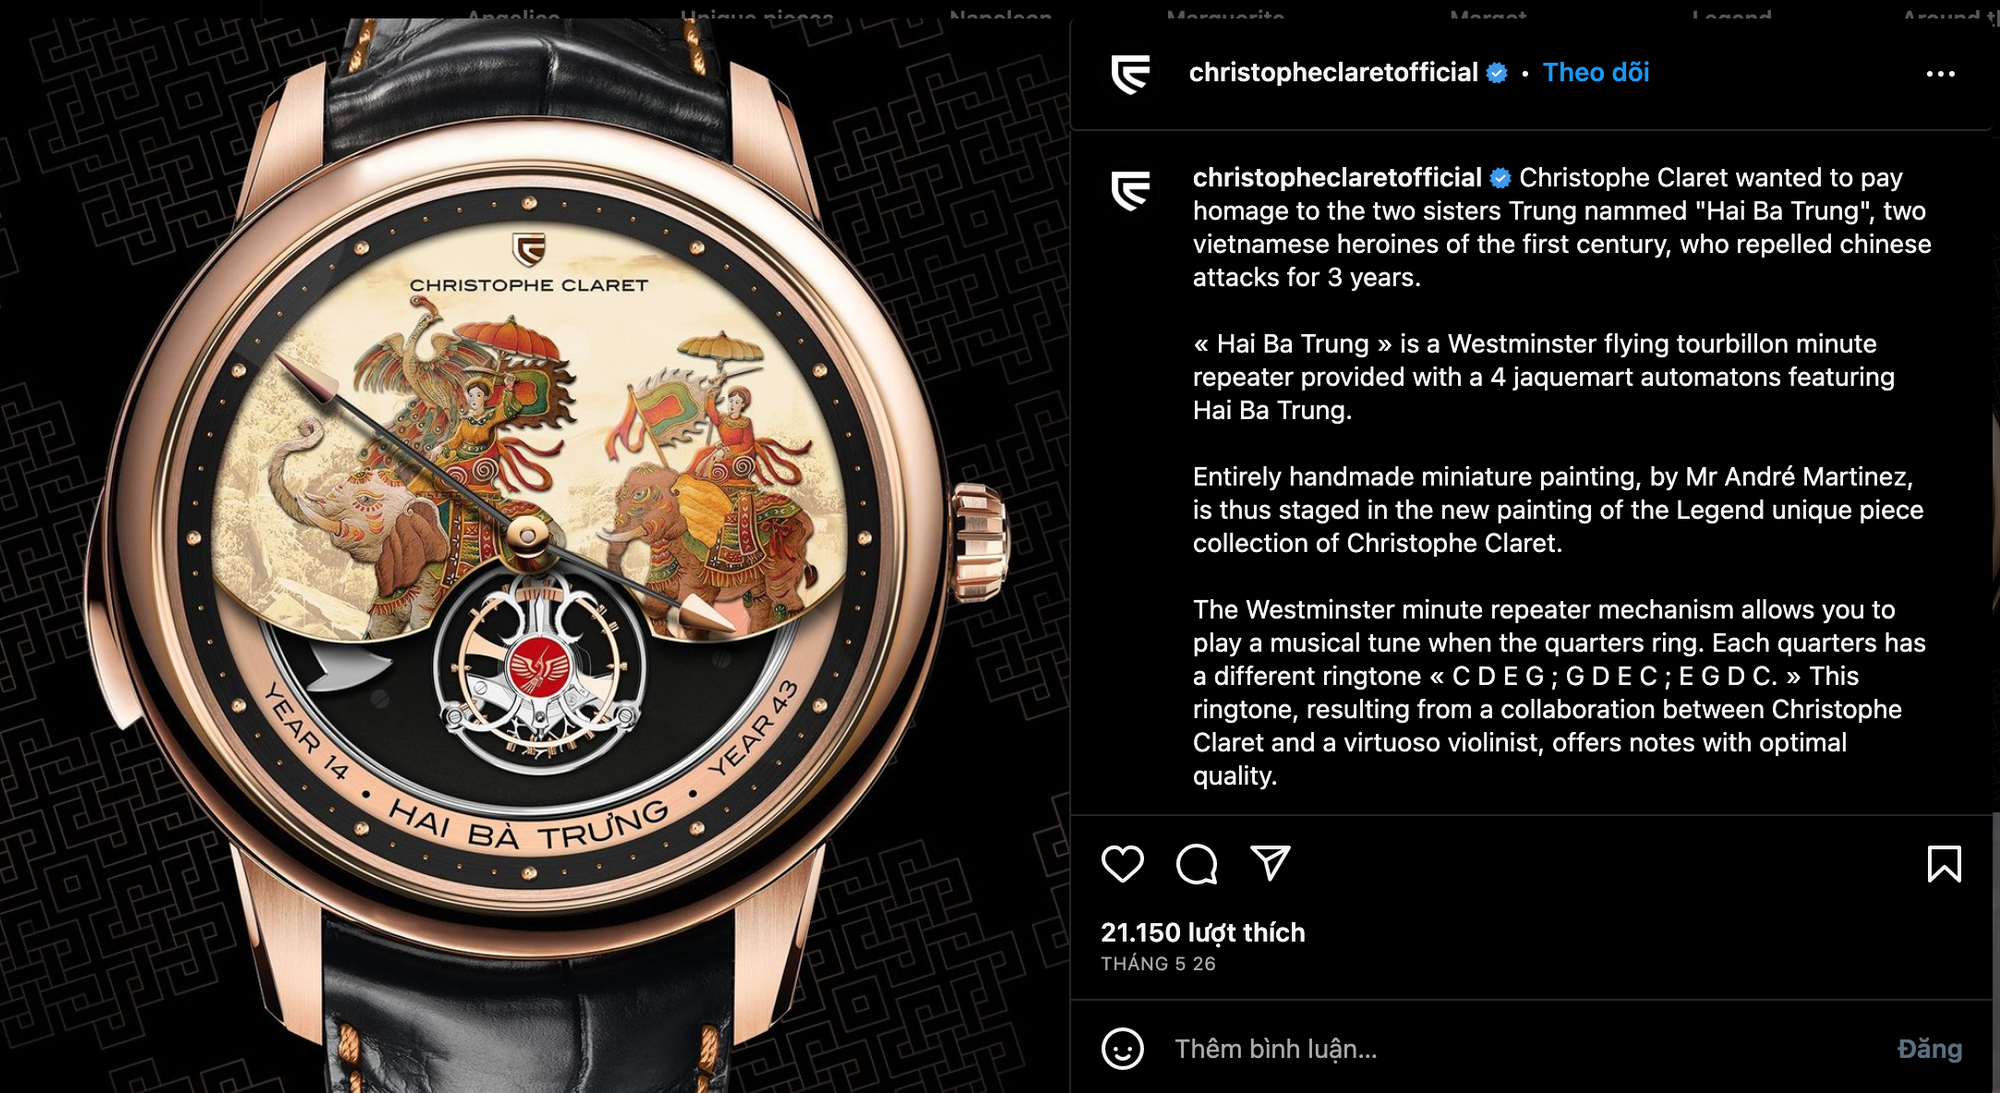 Hình ảnh chiếc đồng hồ với hình vẽ Hai Bà Trưng được hãng đồng hồ Thụy Sĩ đăng tải trên Instagram. Nguồn: giaoducthoidai